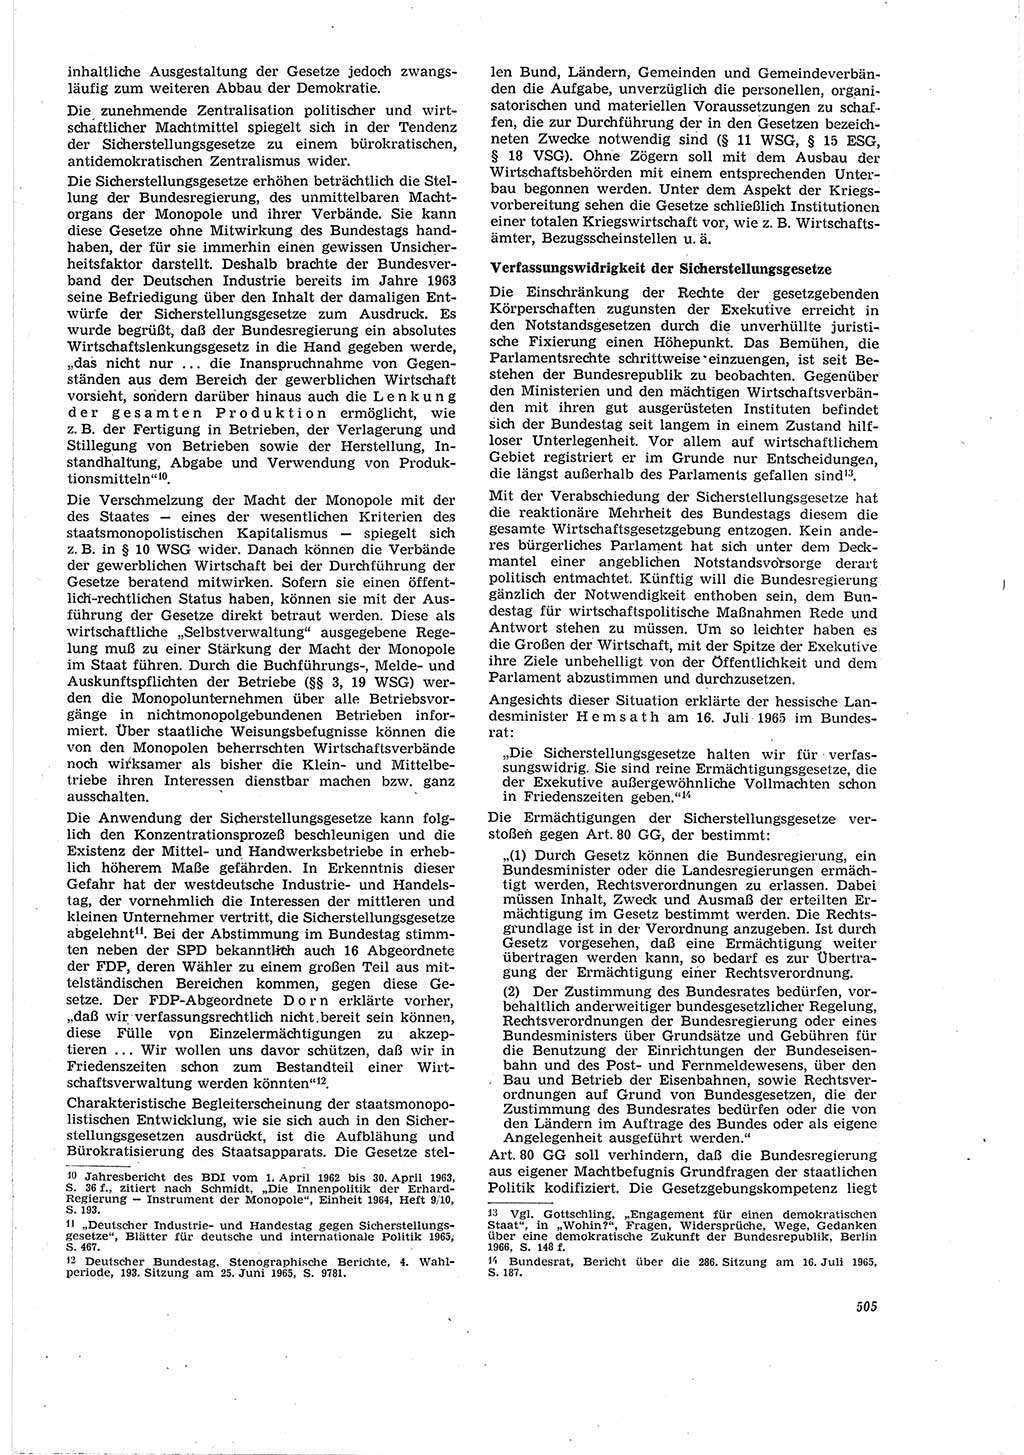 Neue Justiz (NJ), Zeitschrift für Recht und Rechtswissenschaft [Deutsche Demokratische Republik (DDR)], 20. Jahrgang 1966, Seite 505 (NJ DDR 1966, S. 505)